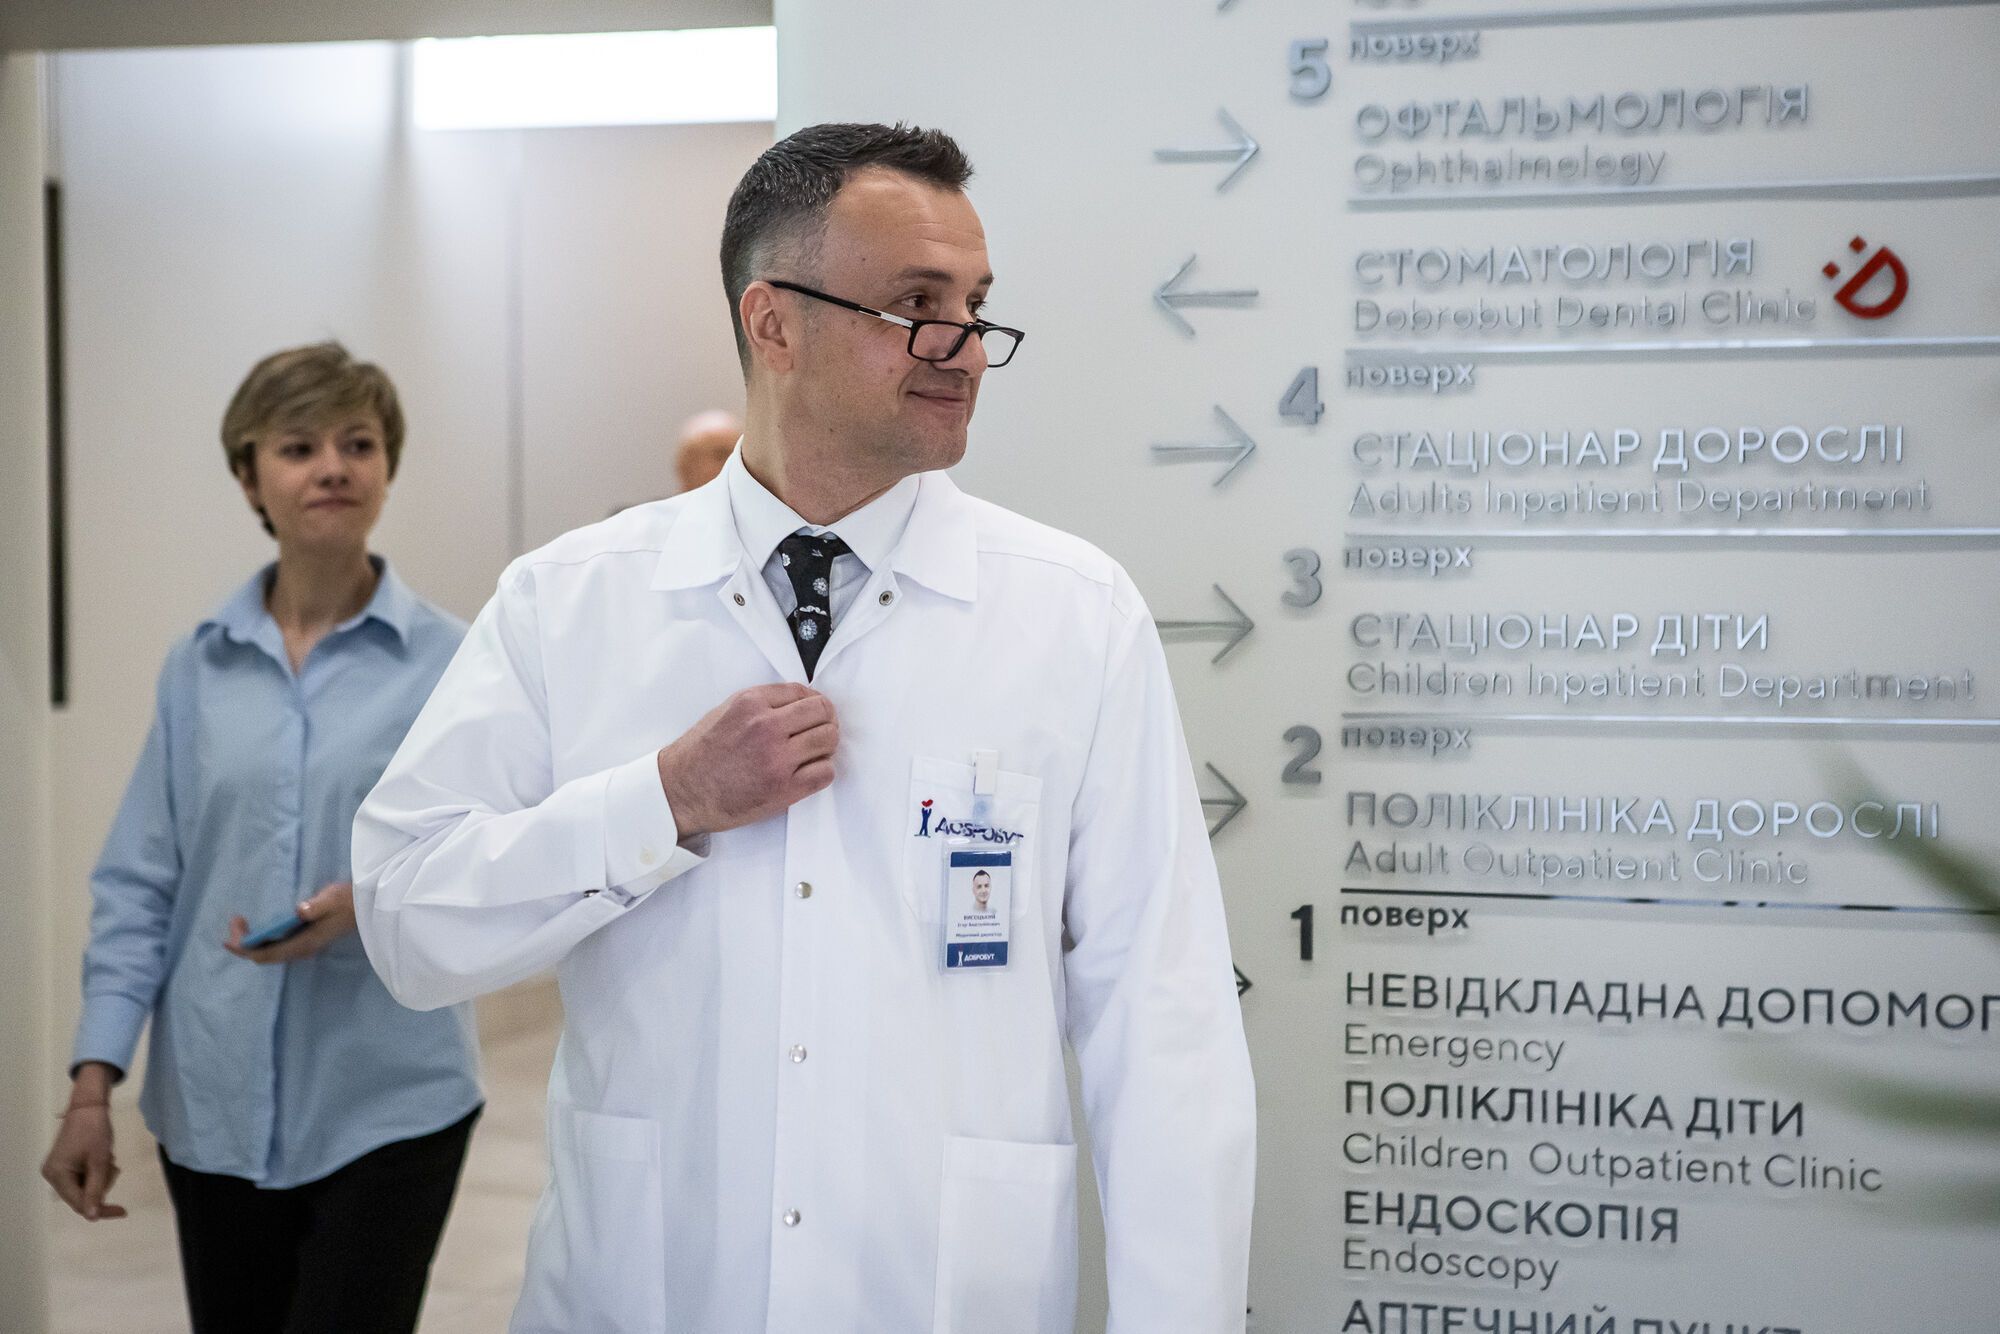 Медицинская сеть ''Добробут'' открыла новую многопрофильную больницу в Киеве